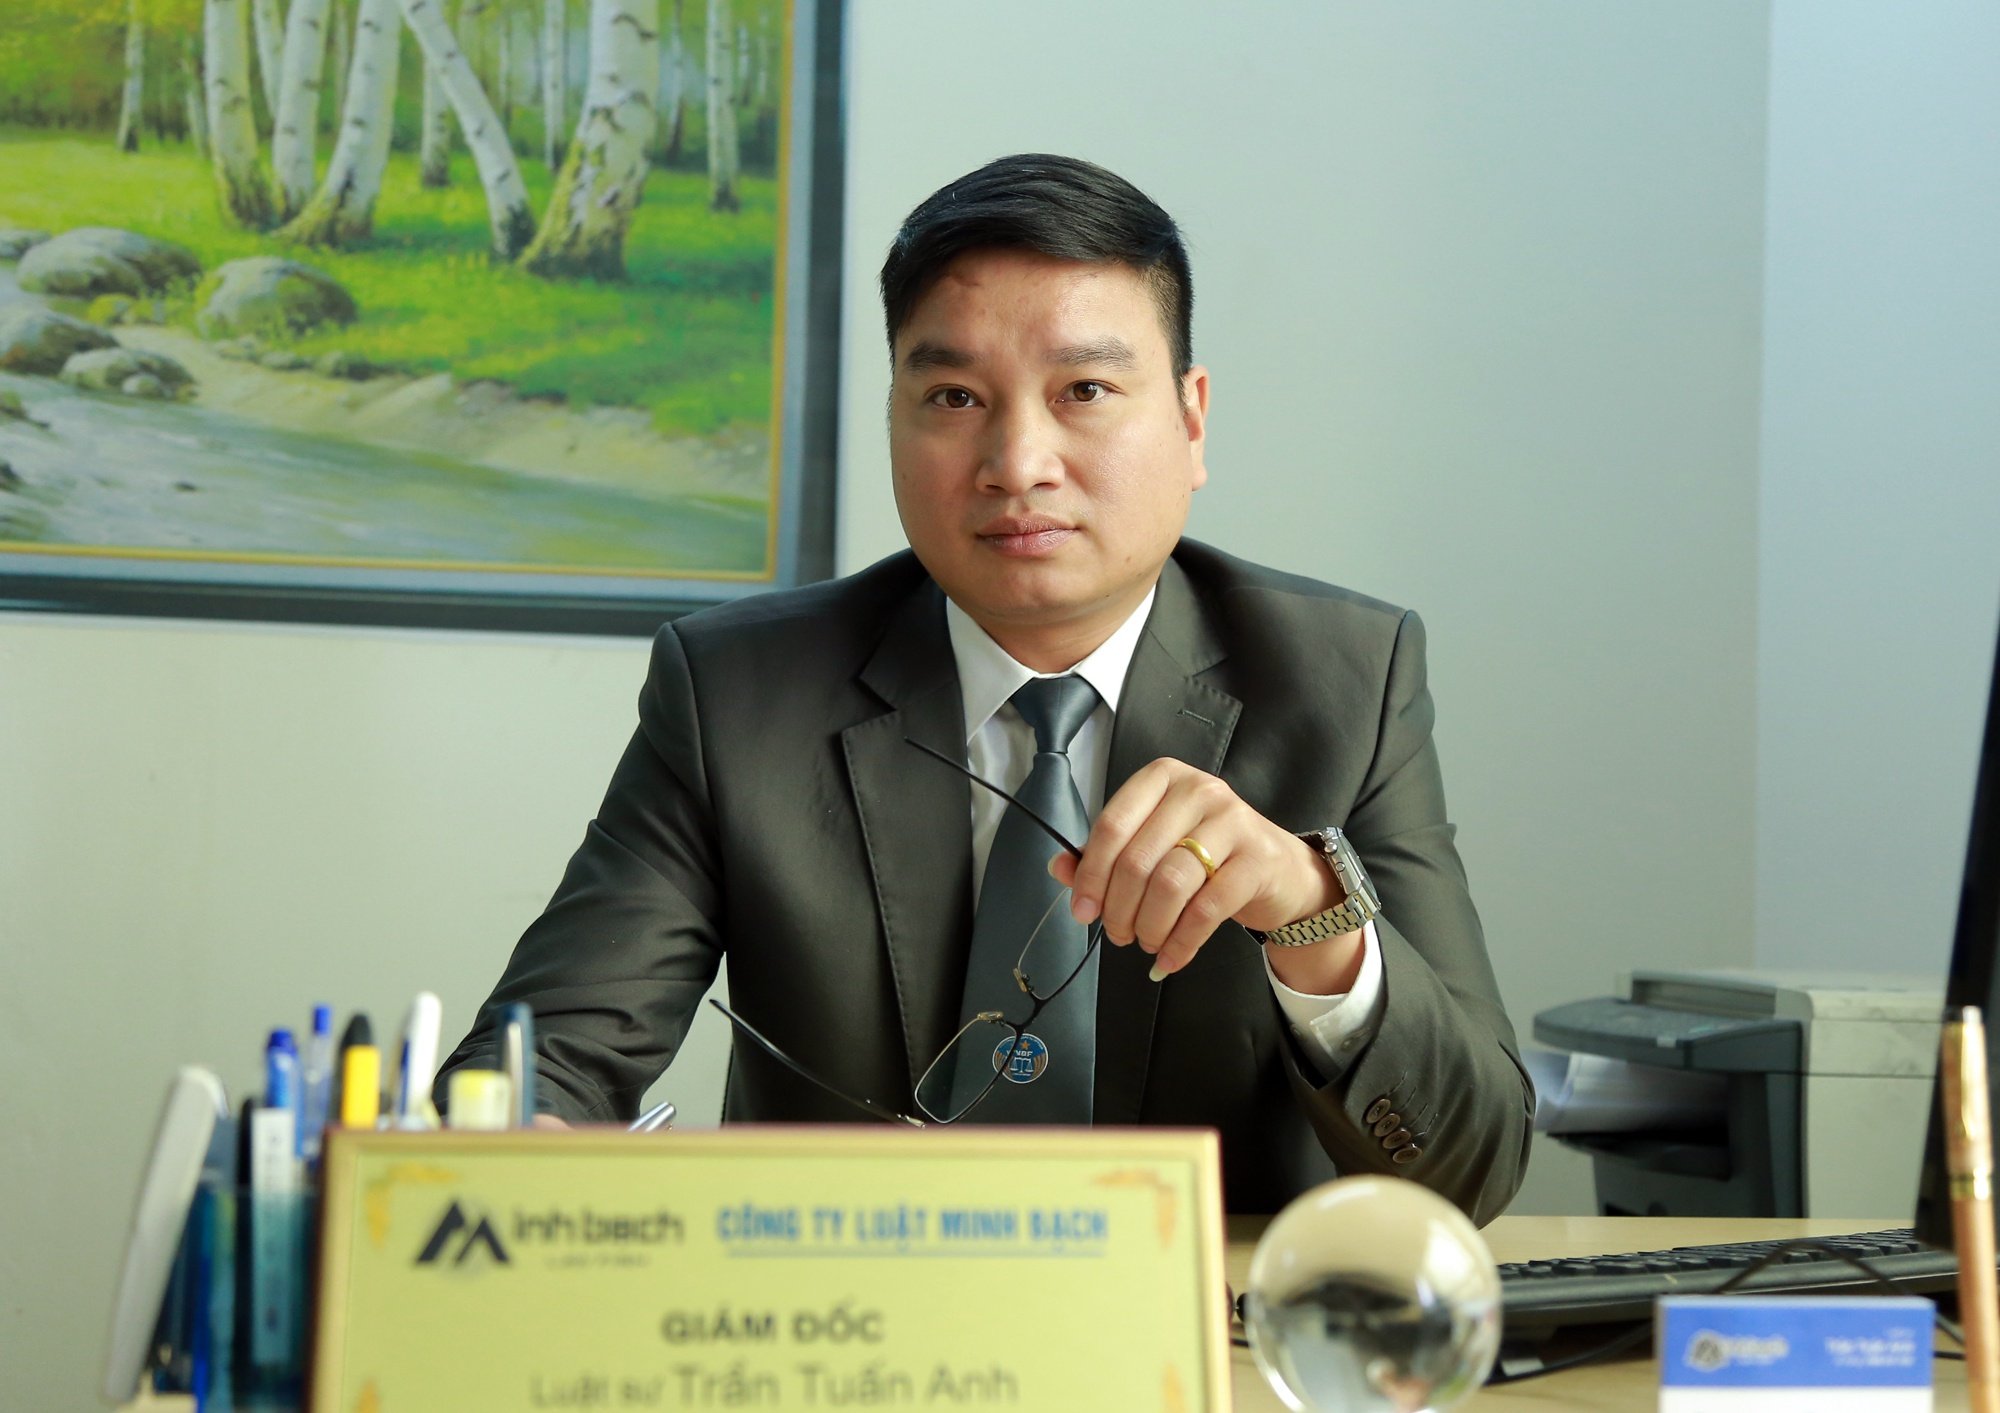 Luật sư Trần Tuấn Anh, Giám đốc công ty Luật Minh Bạch